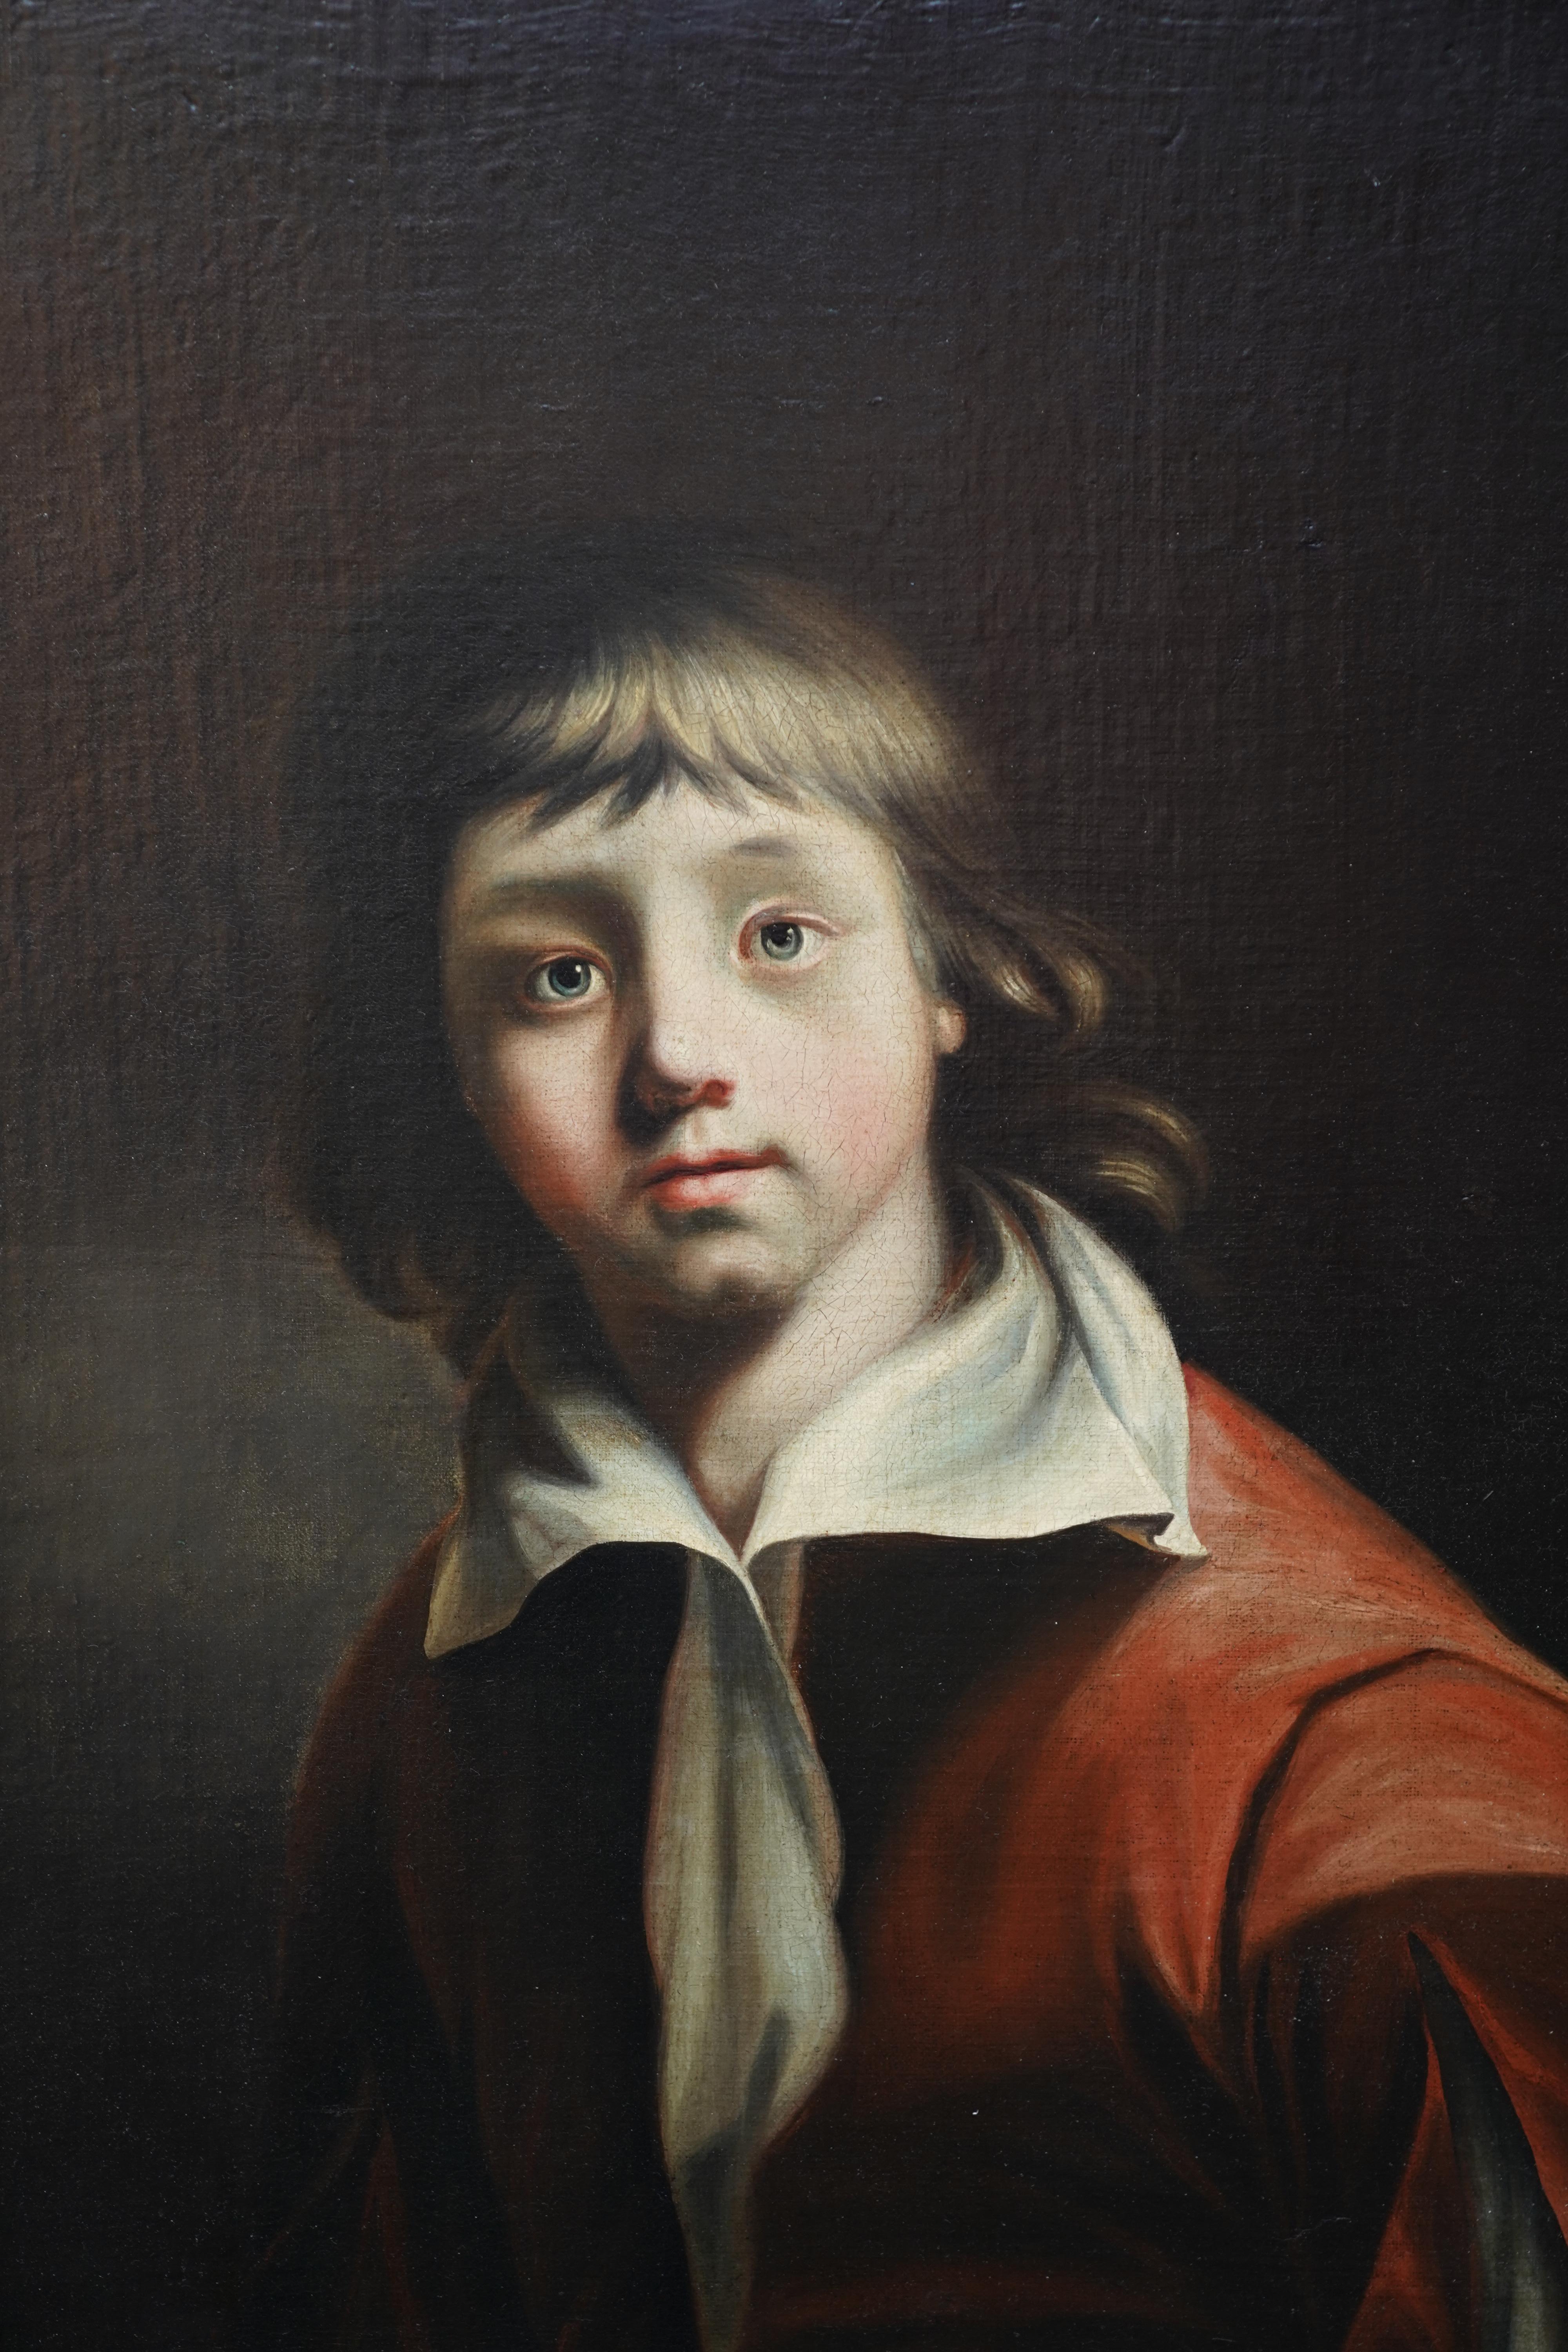 Retrato de un joven - Arte británico 1780 Viejo maestro retrato masculino pintura al óleo - Painting Antiguos maestros de Joseph Wright of Derby